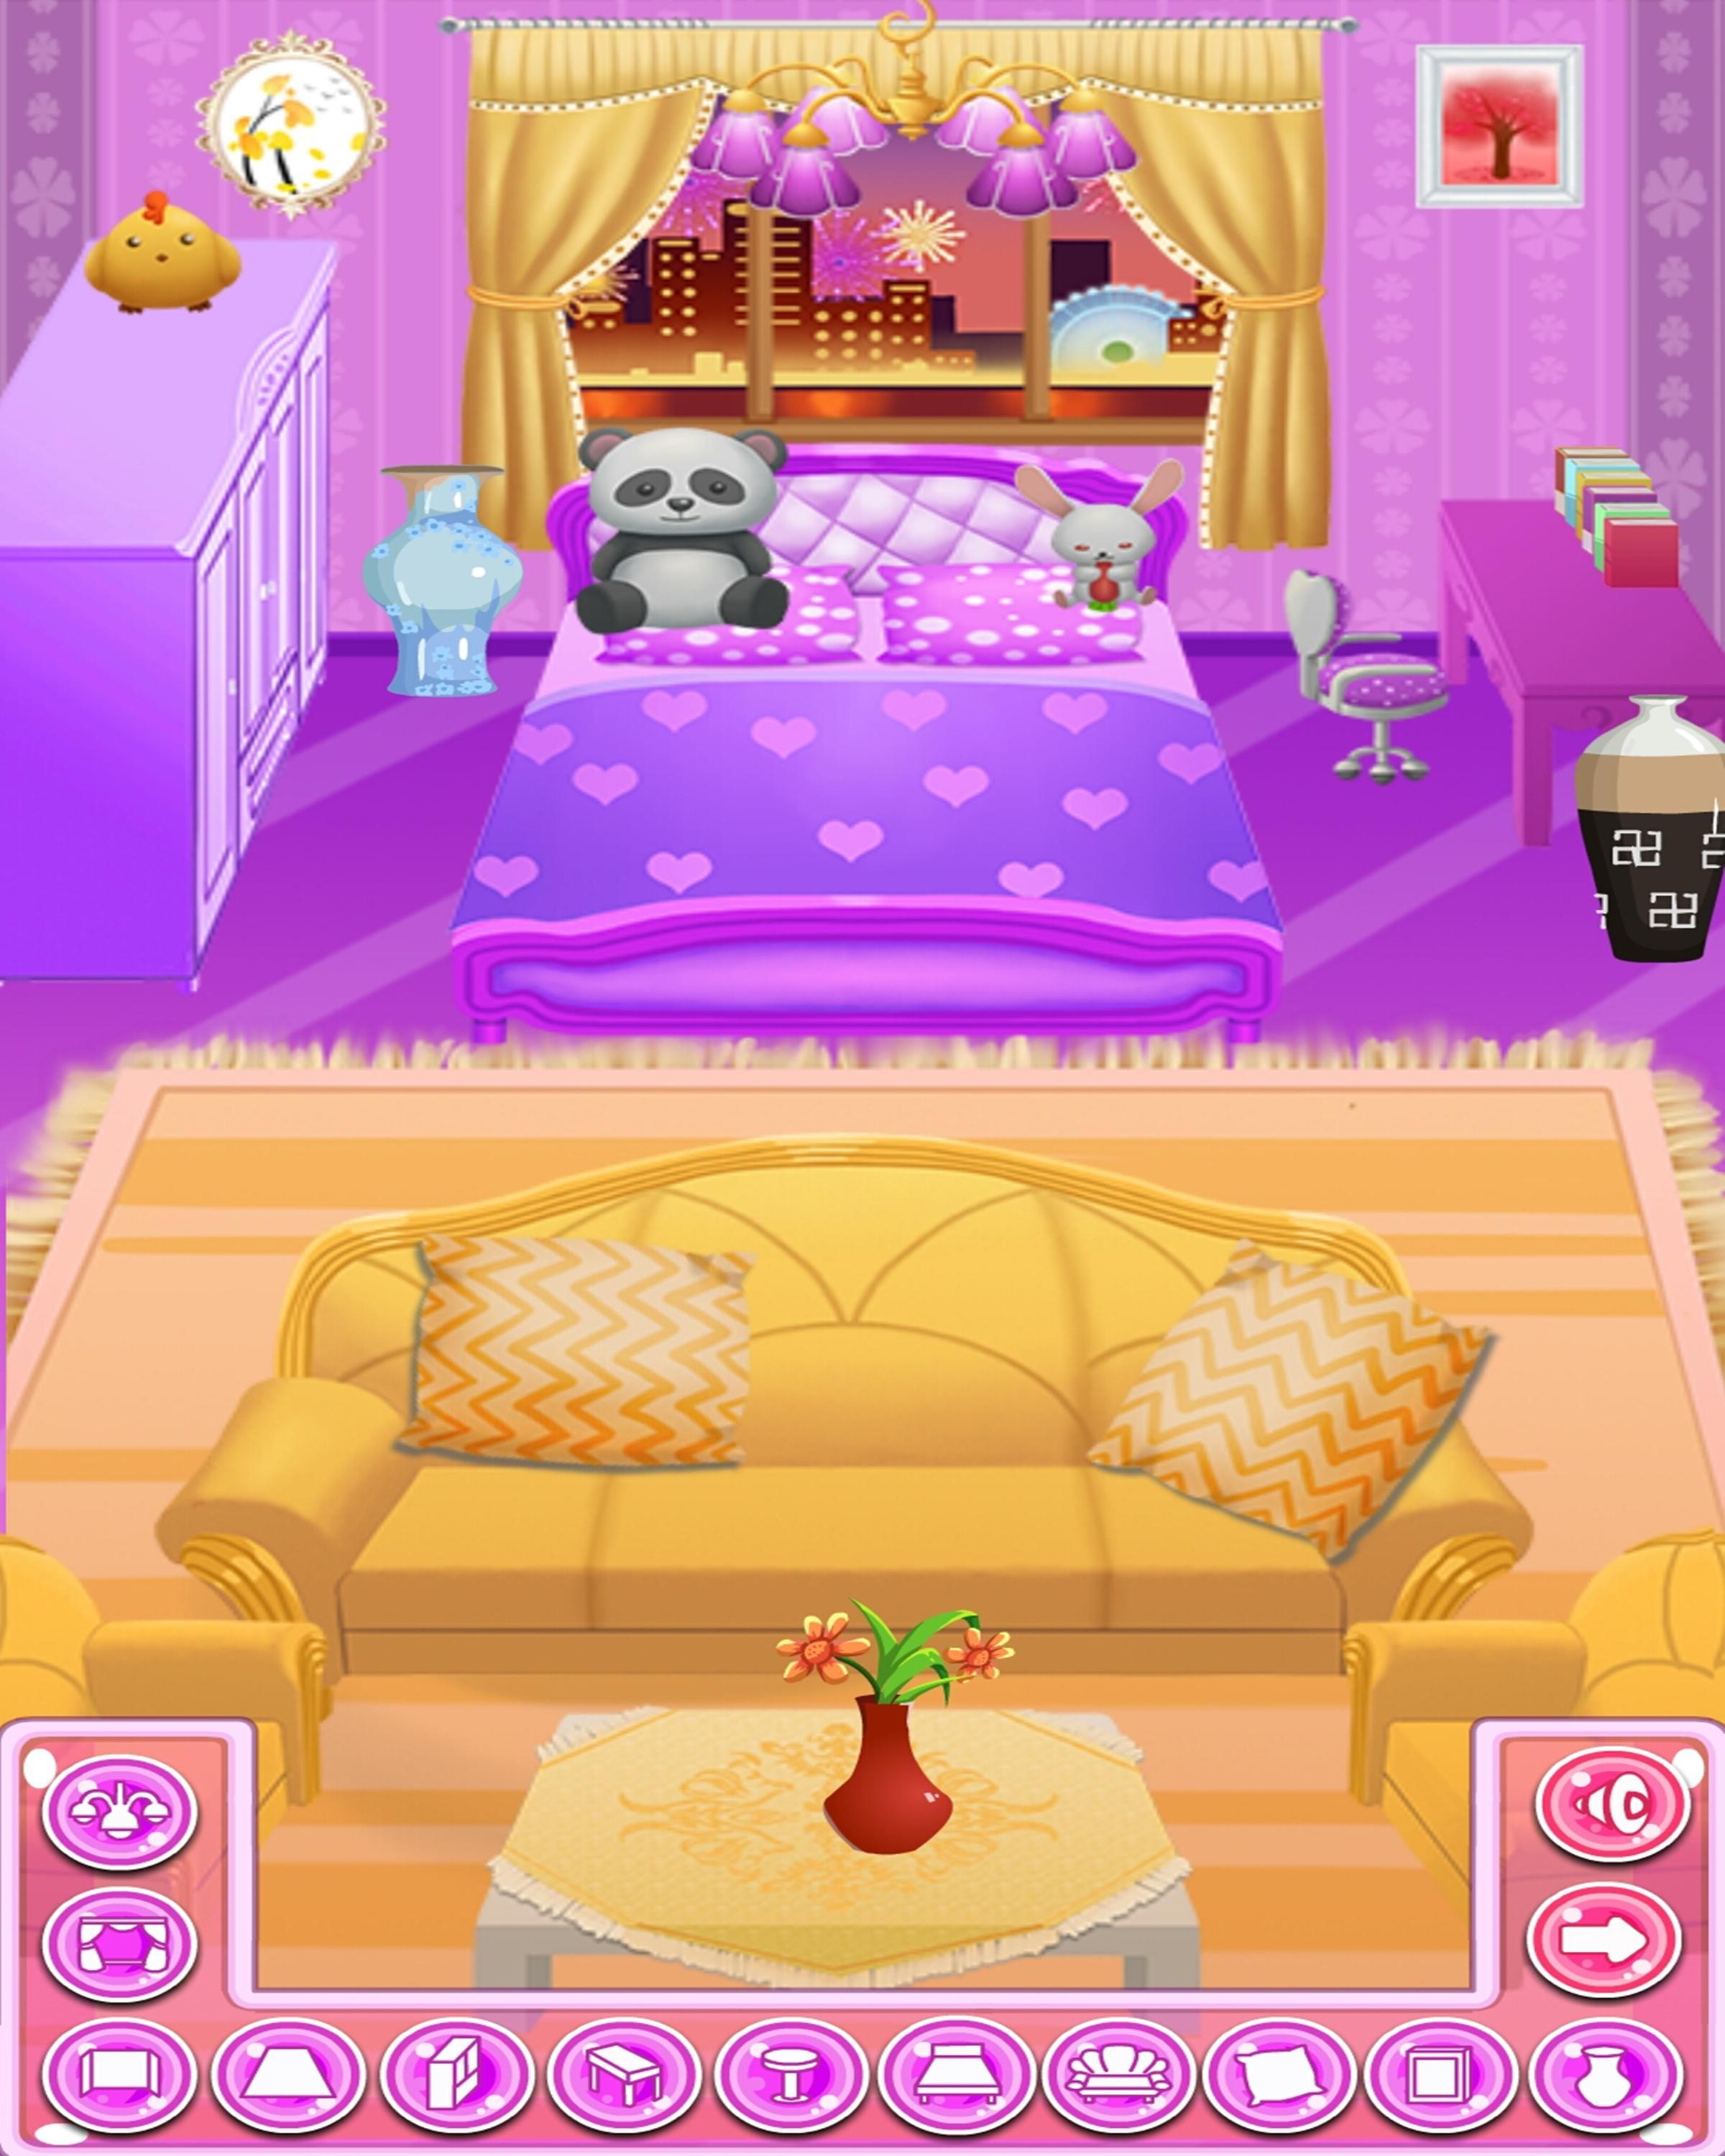 Тайна спальня принцессы. Игра розовый дом принцесс. The Princess’ Bedroom Doll. Princess Bedroom Doll novel. Princess House games Android.